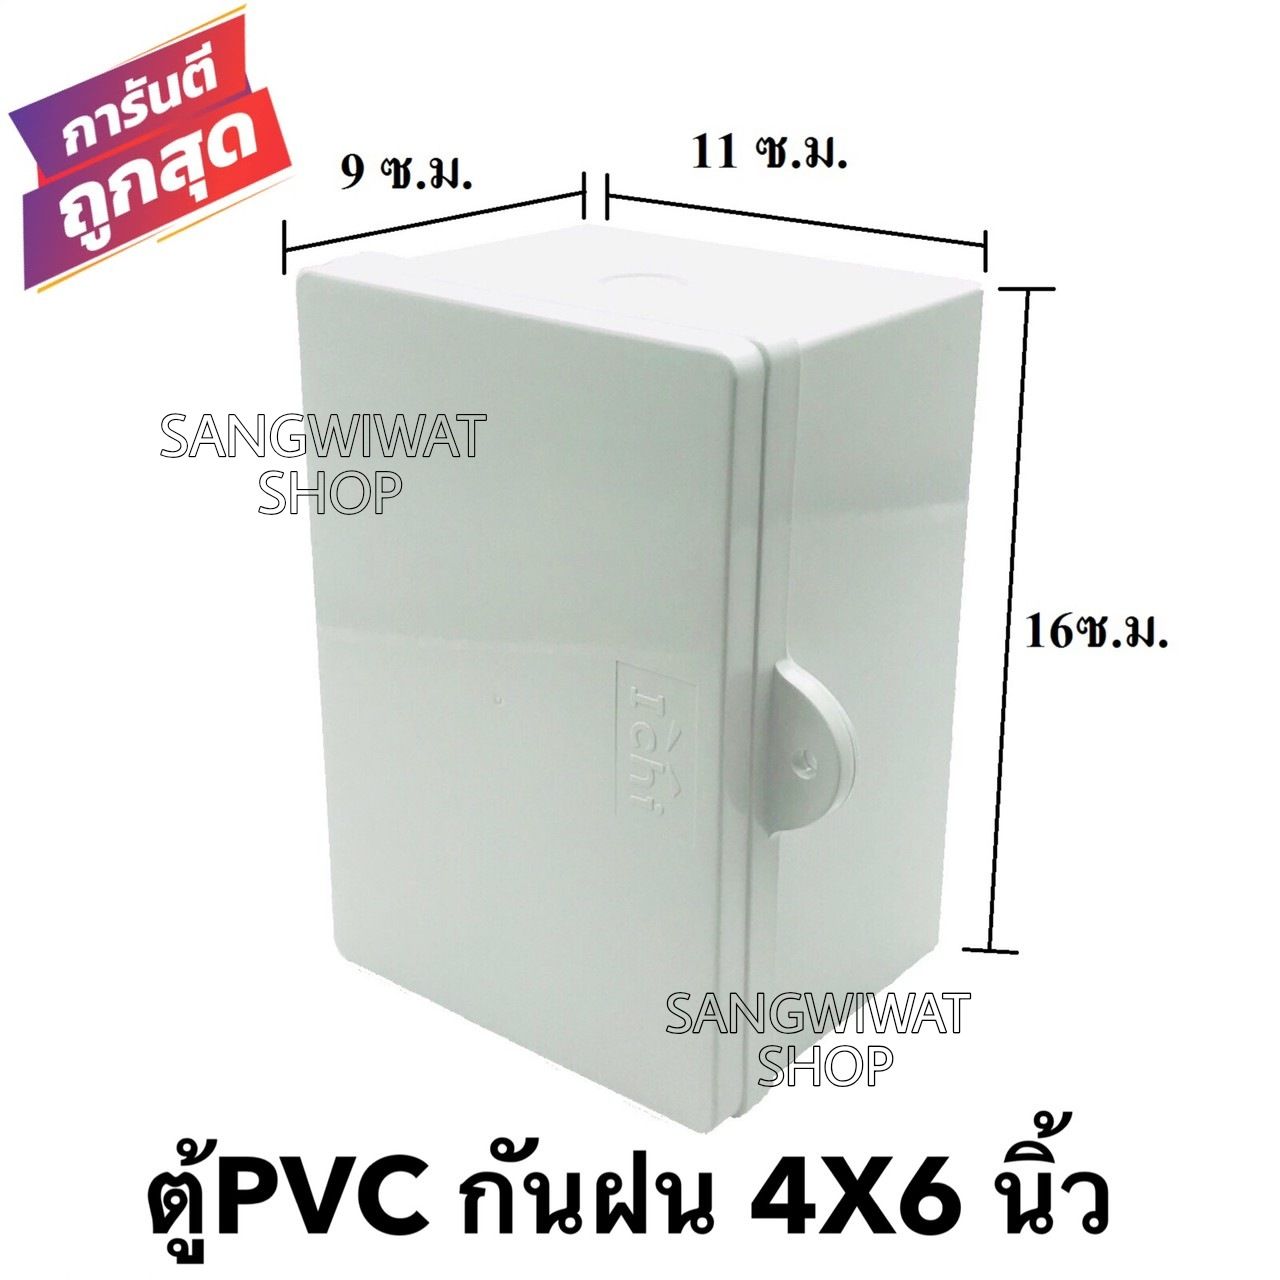 ตู้กันฝน ตู้กันน้ำ ขนาด 4x6 นิ้ว  ตู้PVC ตู้ไฟ ตู้เบรคเกอร์ (ขนาด 9x11x16 ซ.ม.)